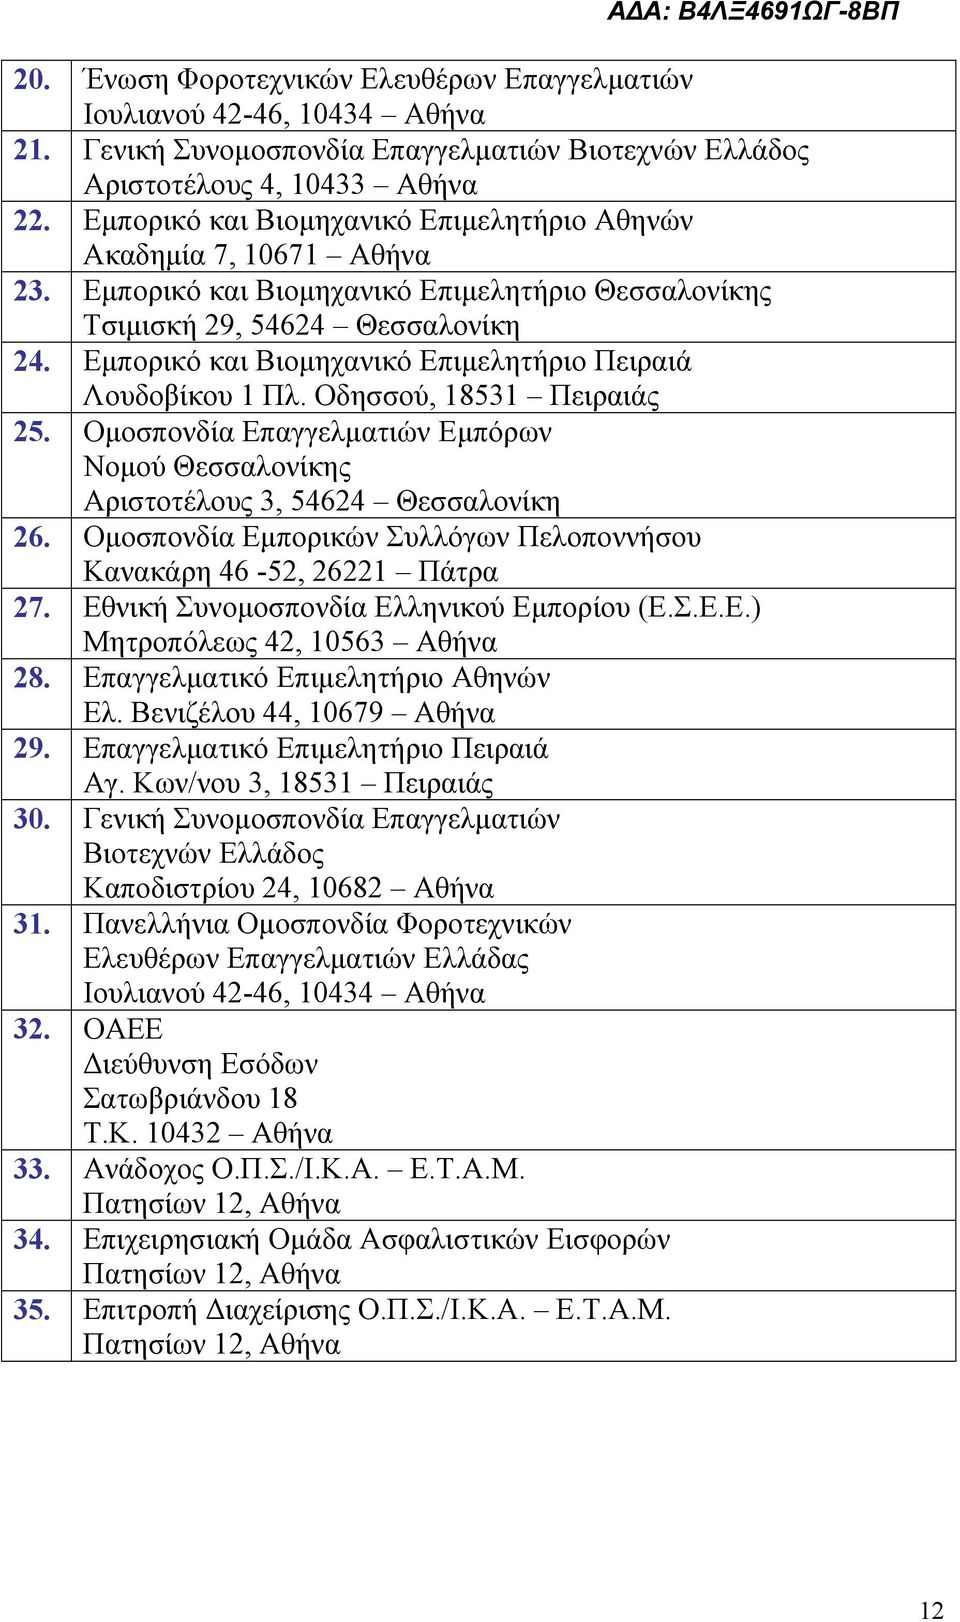 Εμπορικό και Βιομηχανικό Επιμελητήριο Πειραιά Λουδοβίκου 1 Πλ. Οδησσού, 18531 Πειραιάς 25. Ομοσπονδία Επαγγελματιών Εμπόρων Νομού Θεσσαλονίκης Αριστοτέλους 3, 54624 Θεσσαλονίκη 26.